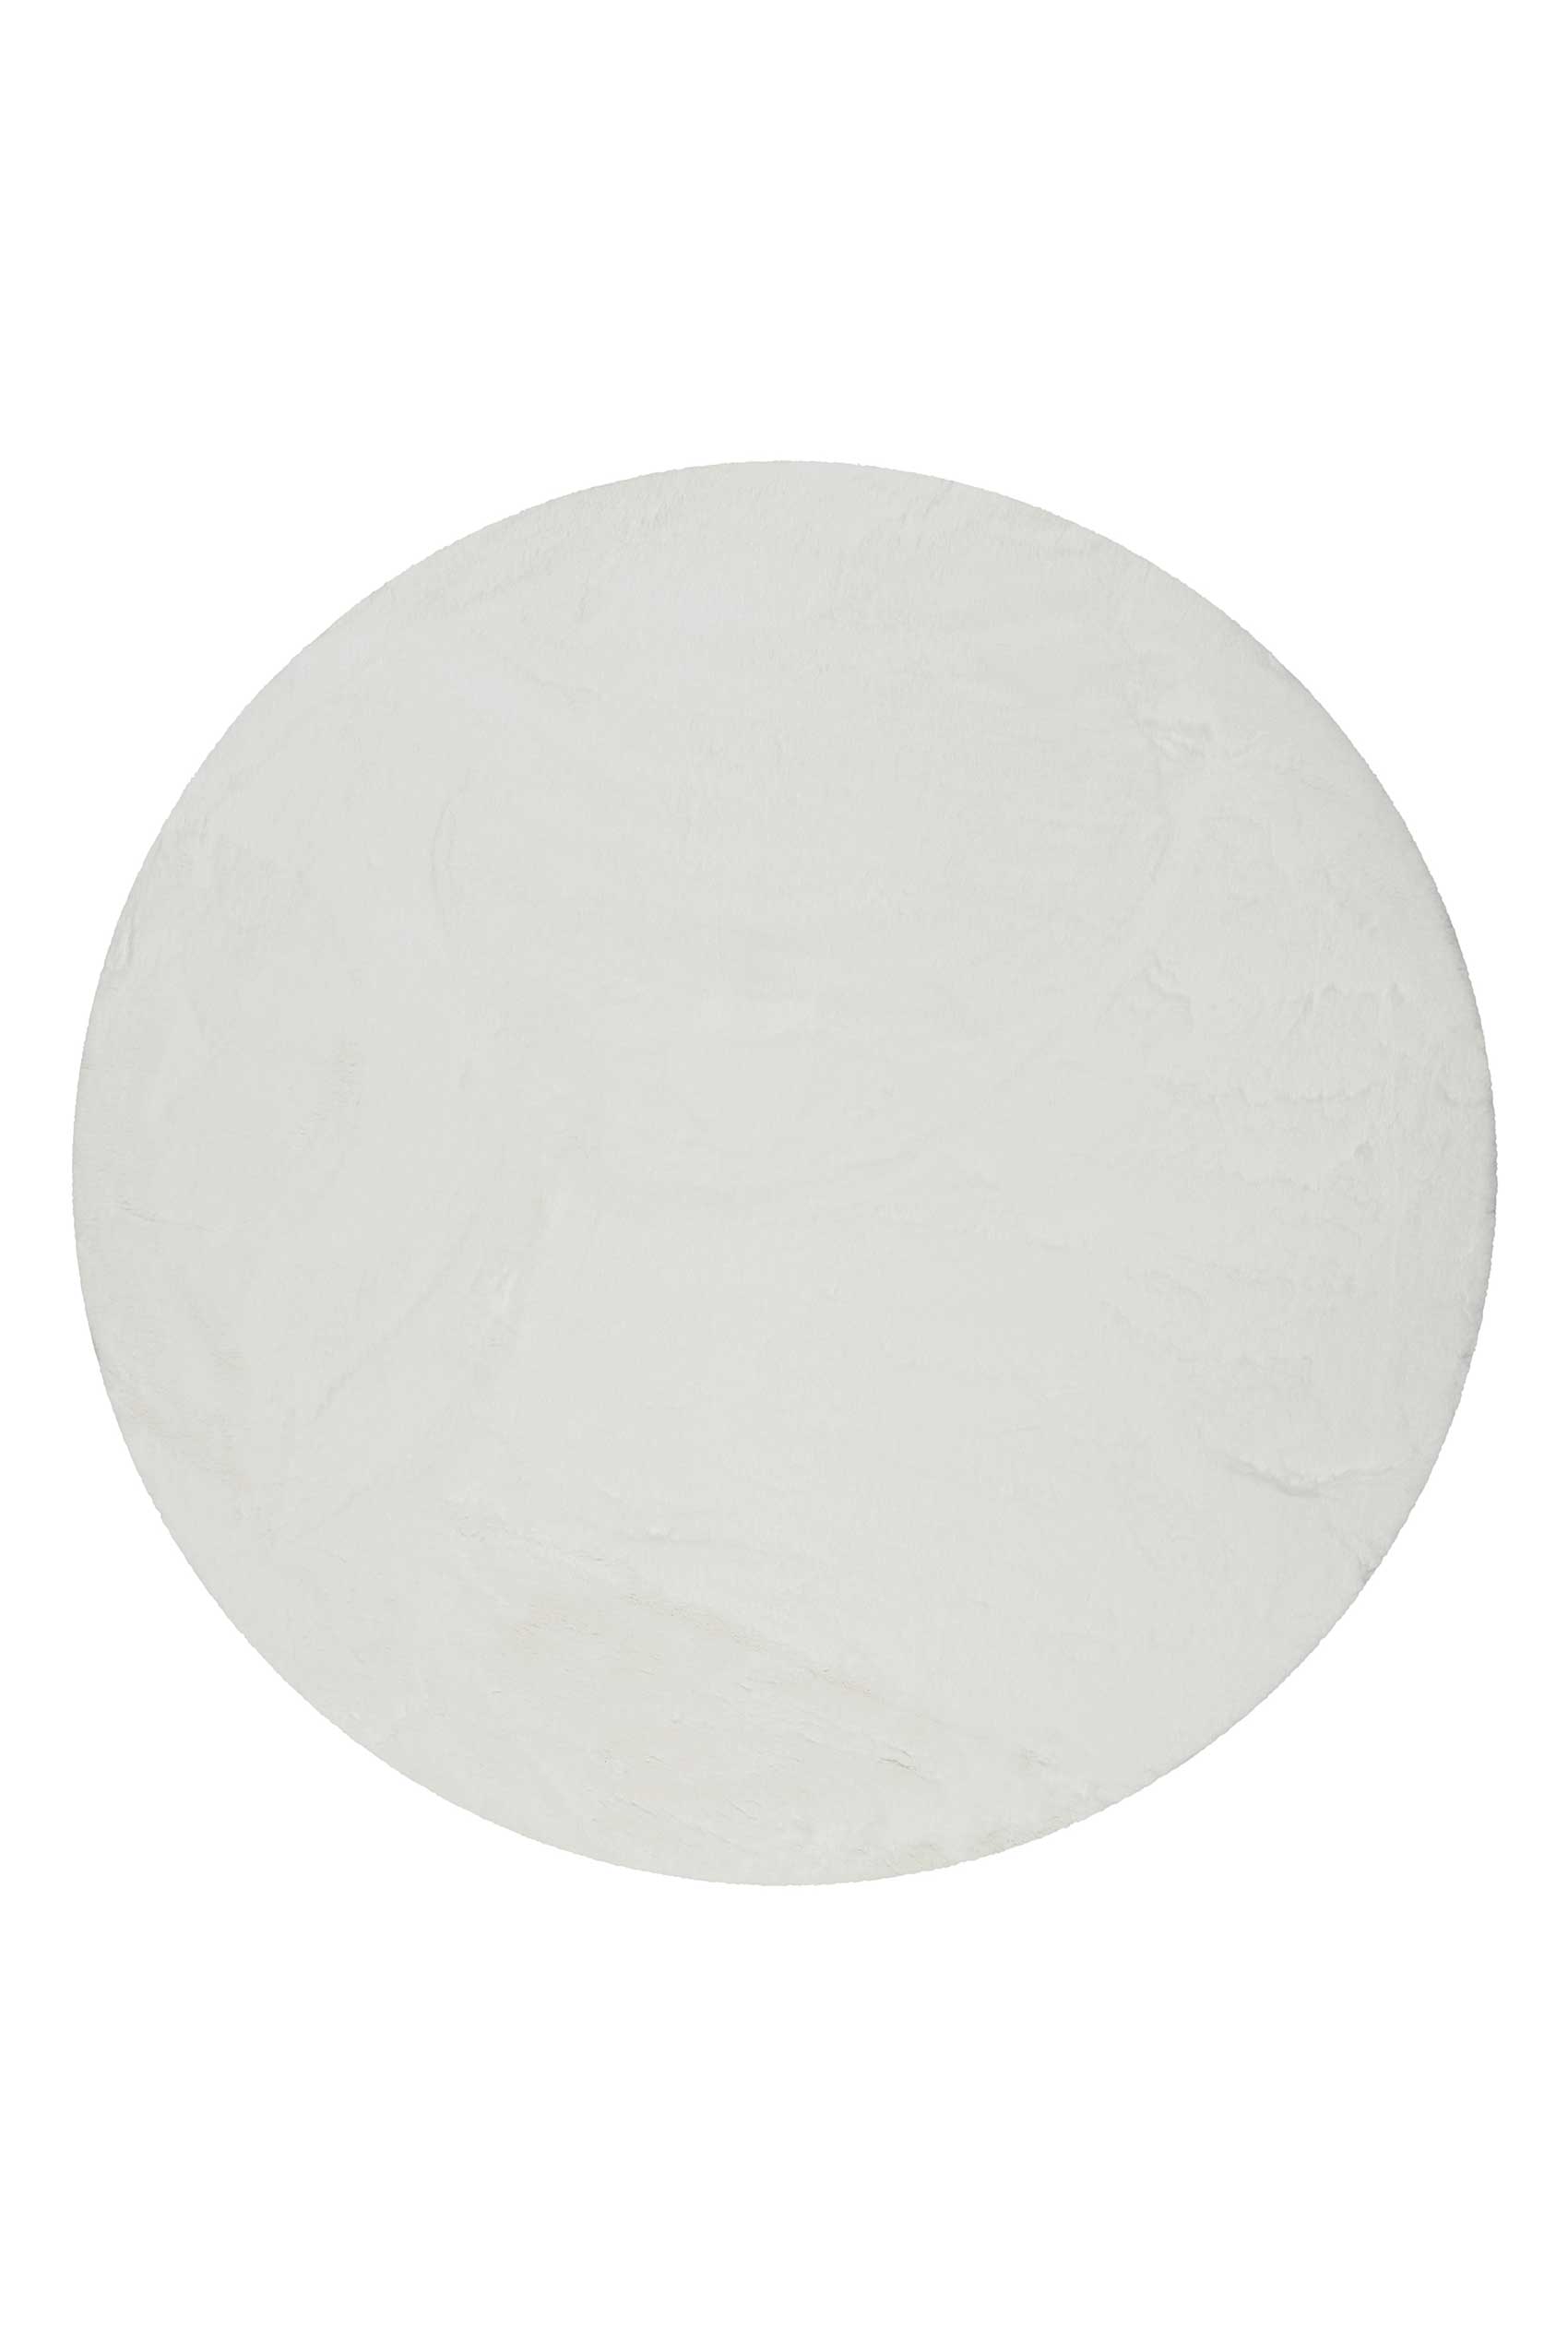 Teppich Rund Weiß und sehr flauschig Hochflor » Alice « - Ansicht 1